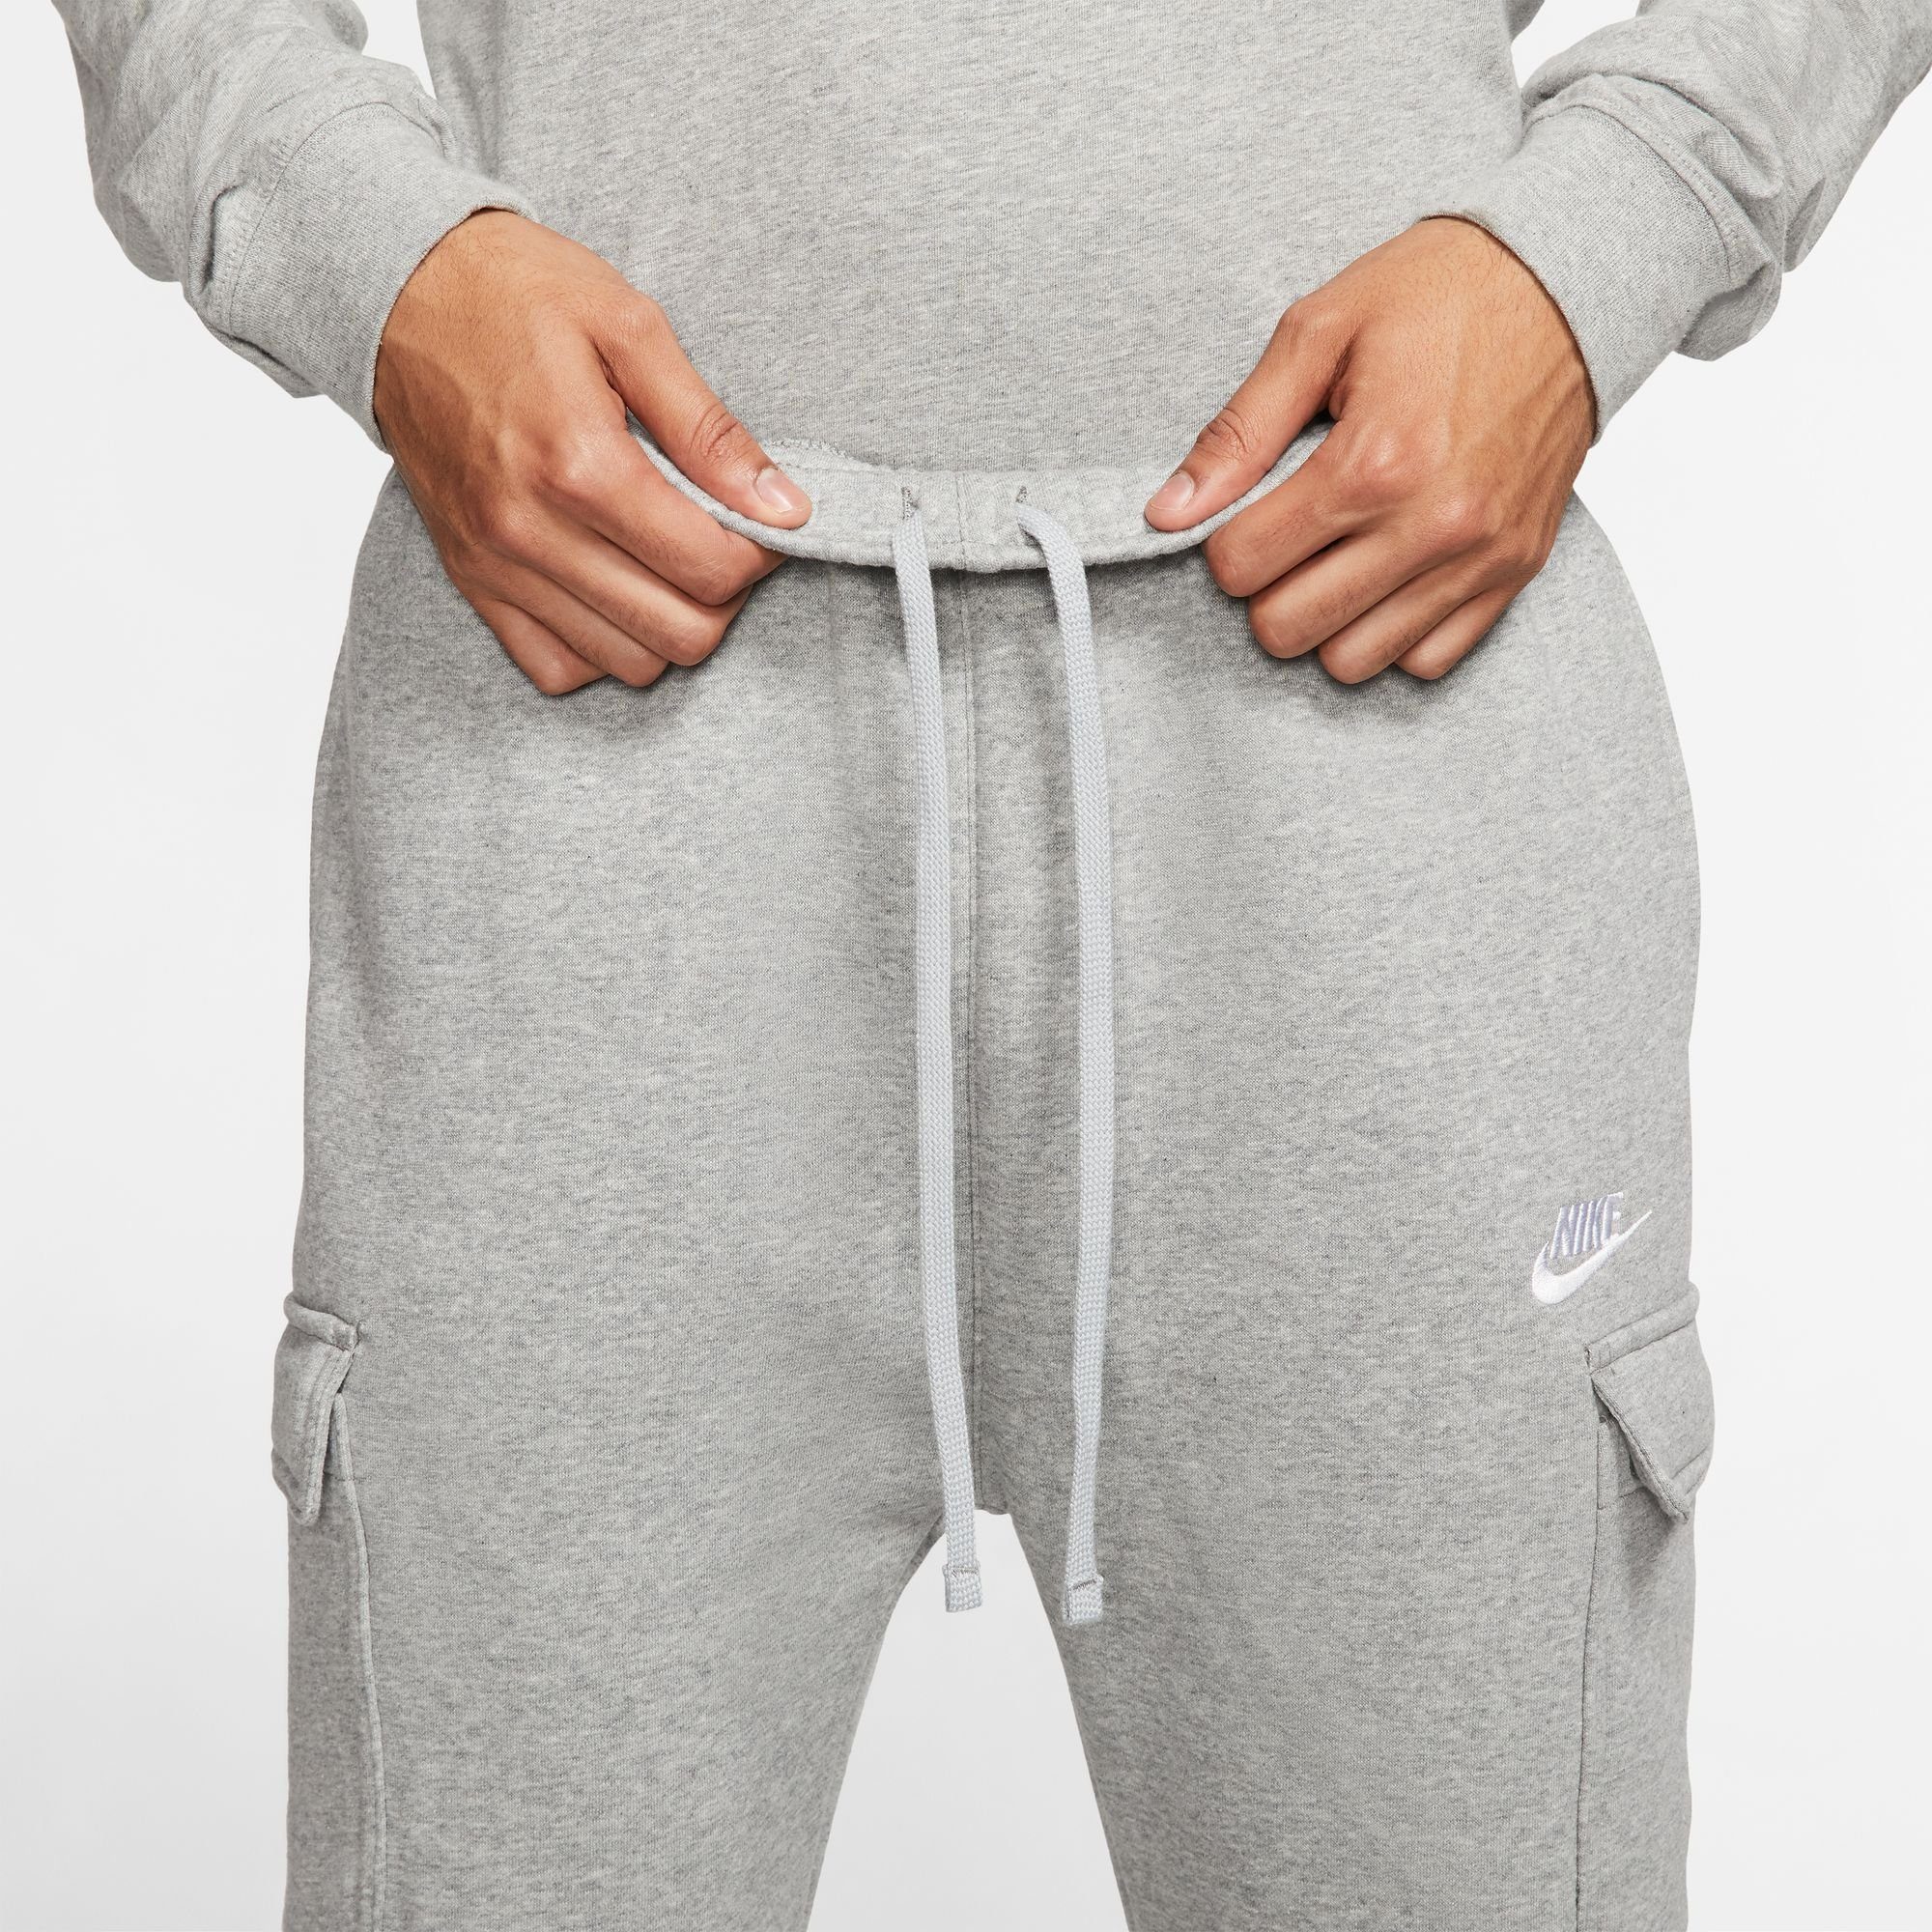 CLUB PANTS CARGO Sportswear Jogginghose hellgrau-meliert FLEECE MEN'S Nike